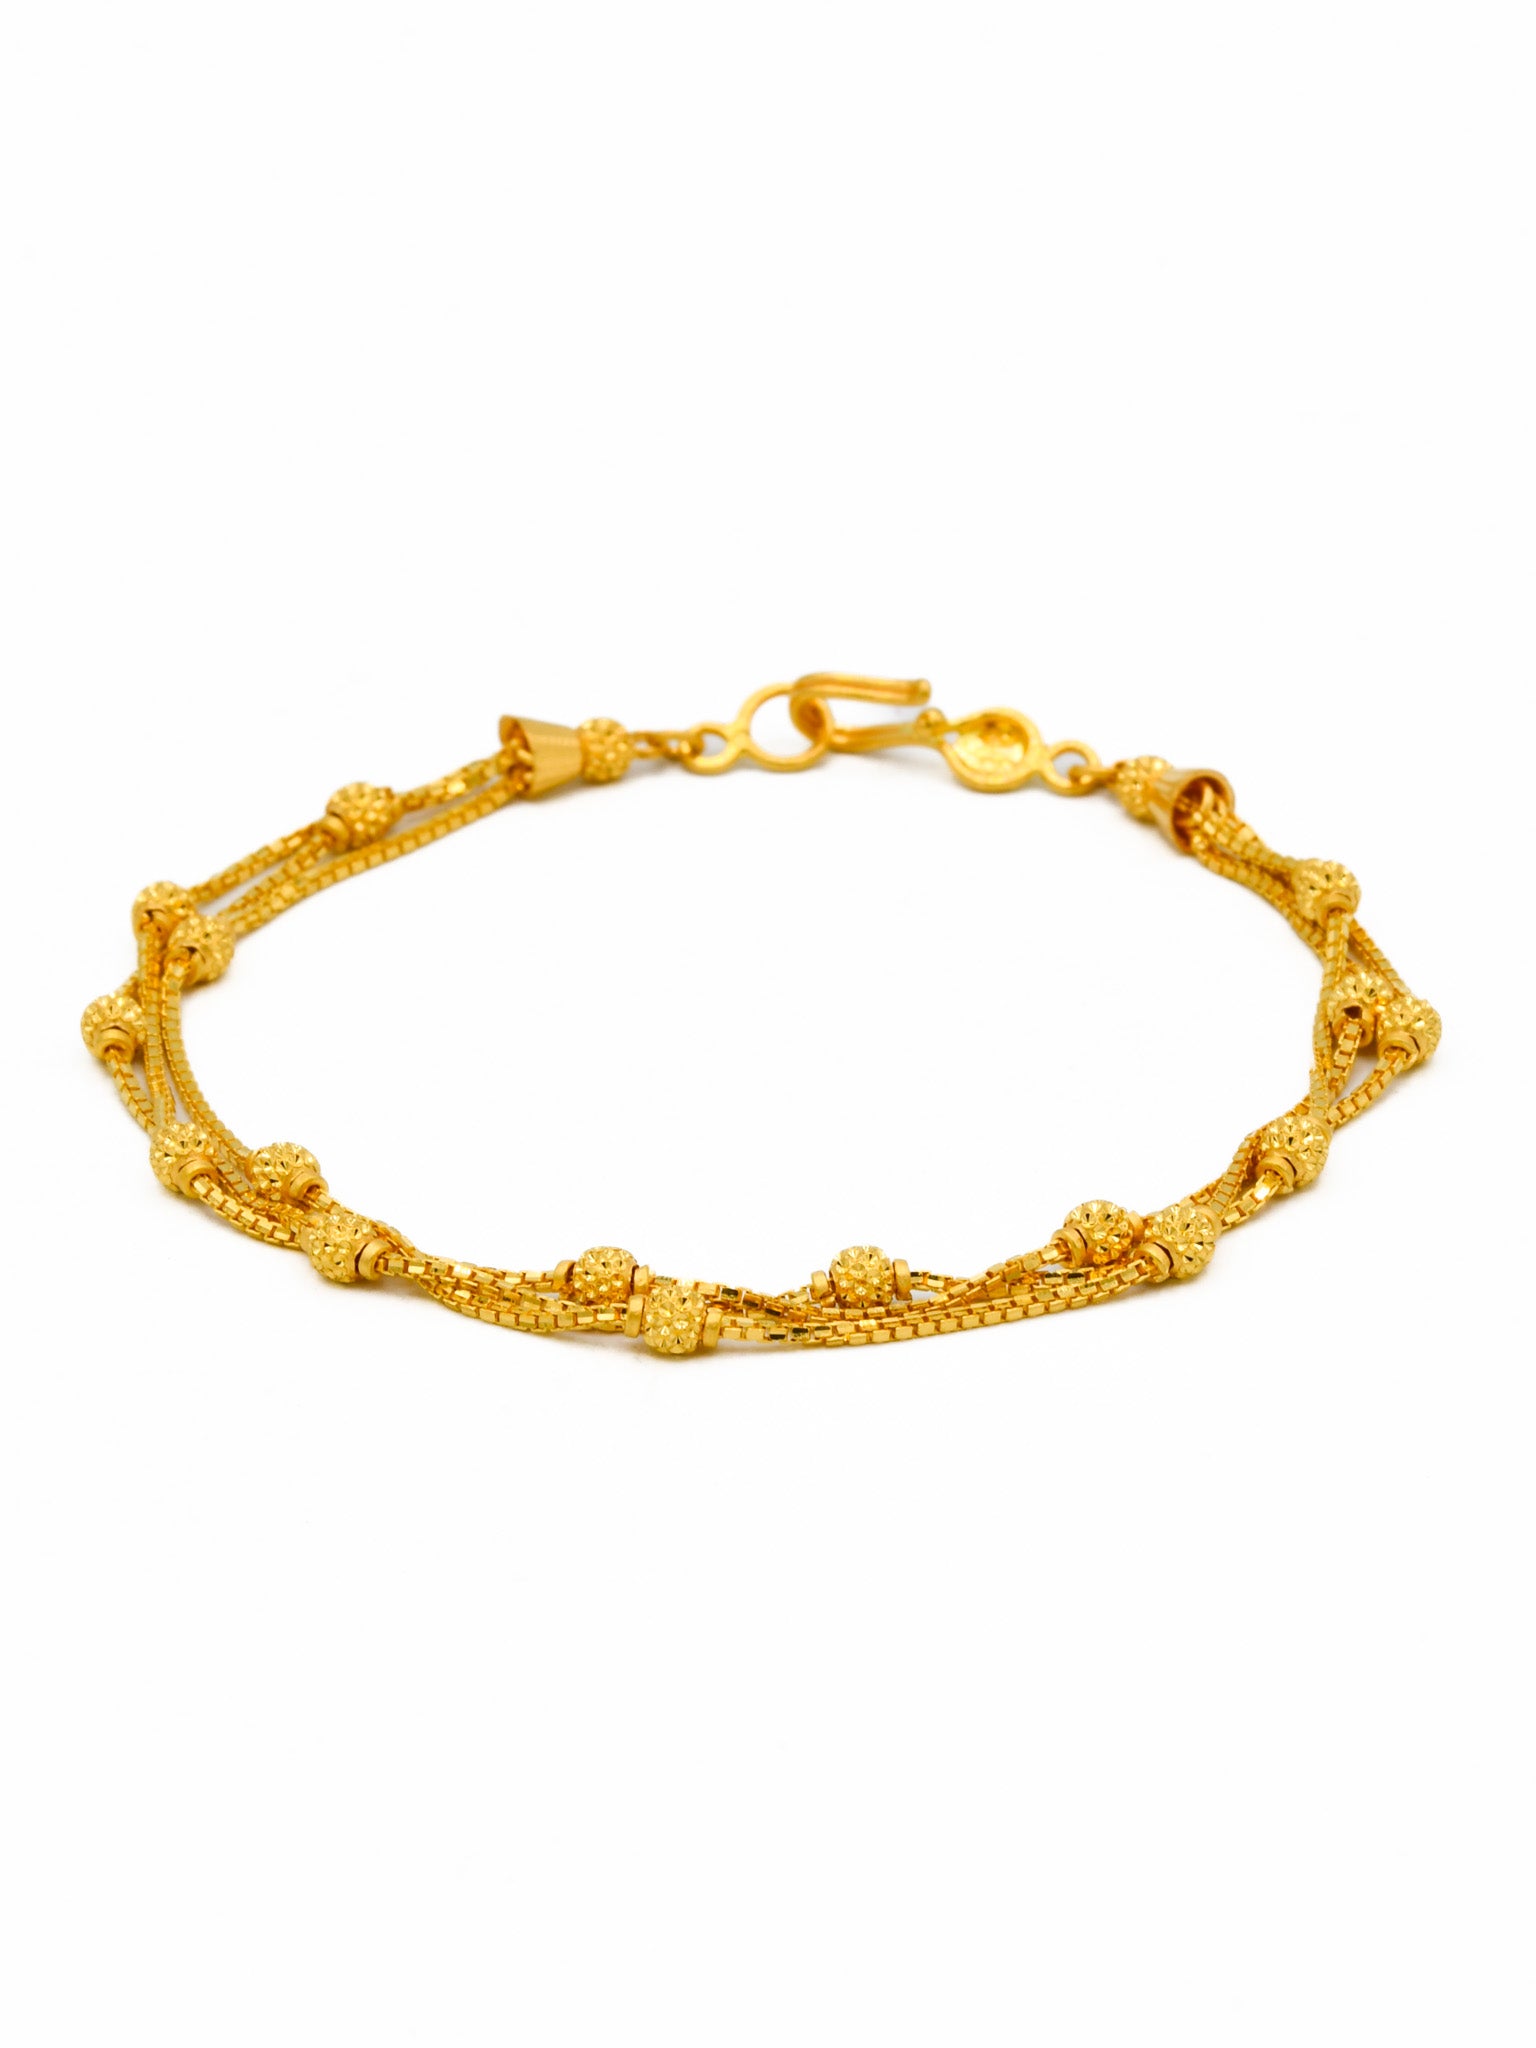 22ct Gold Ball 3 Row Ladies Bracelet - Roop Darshan